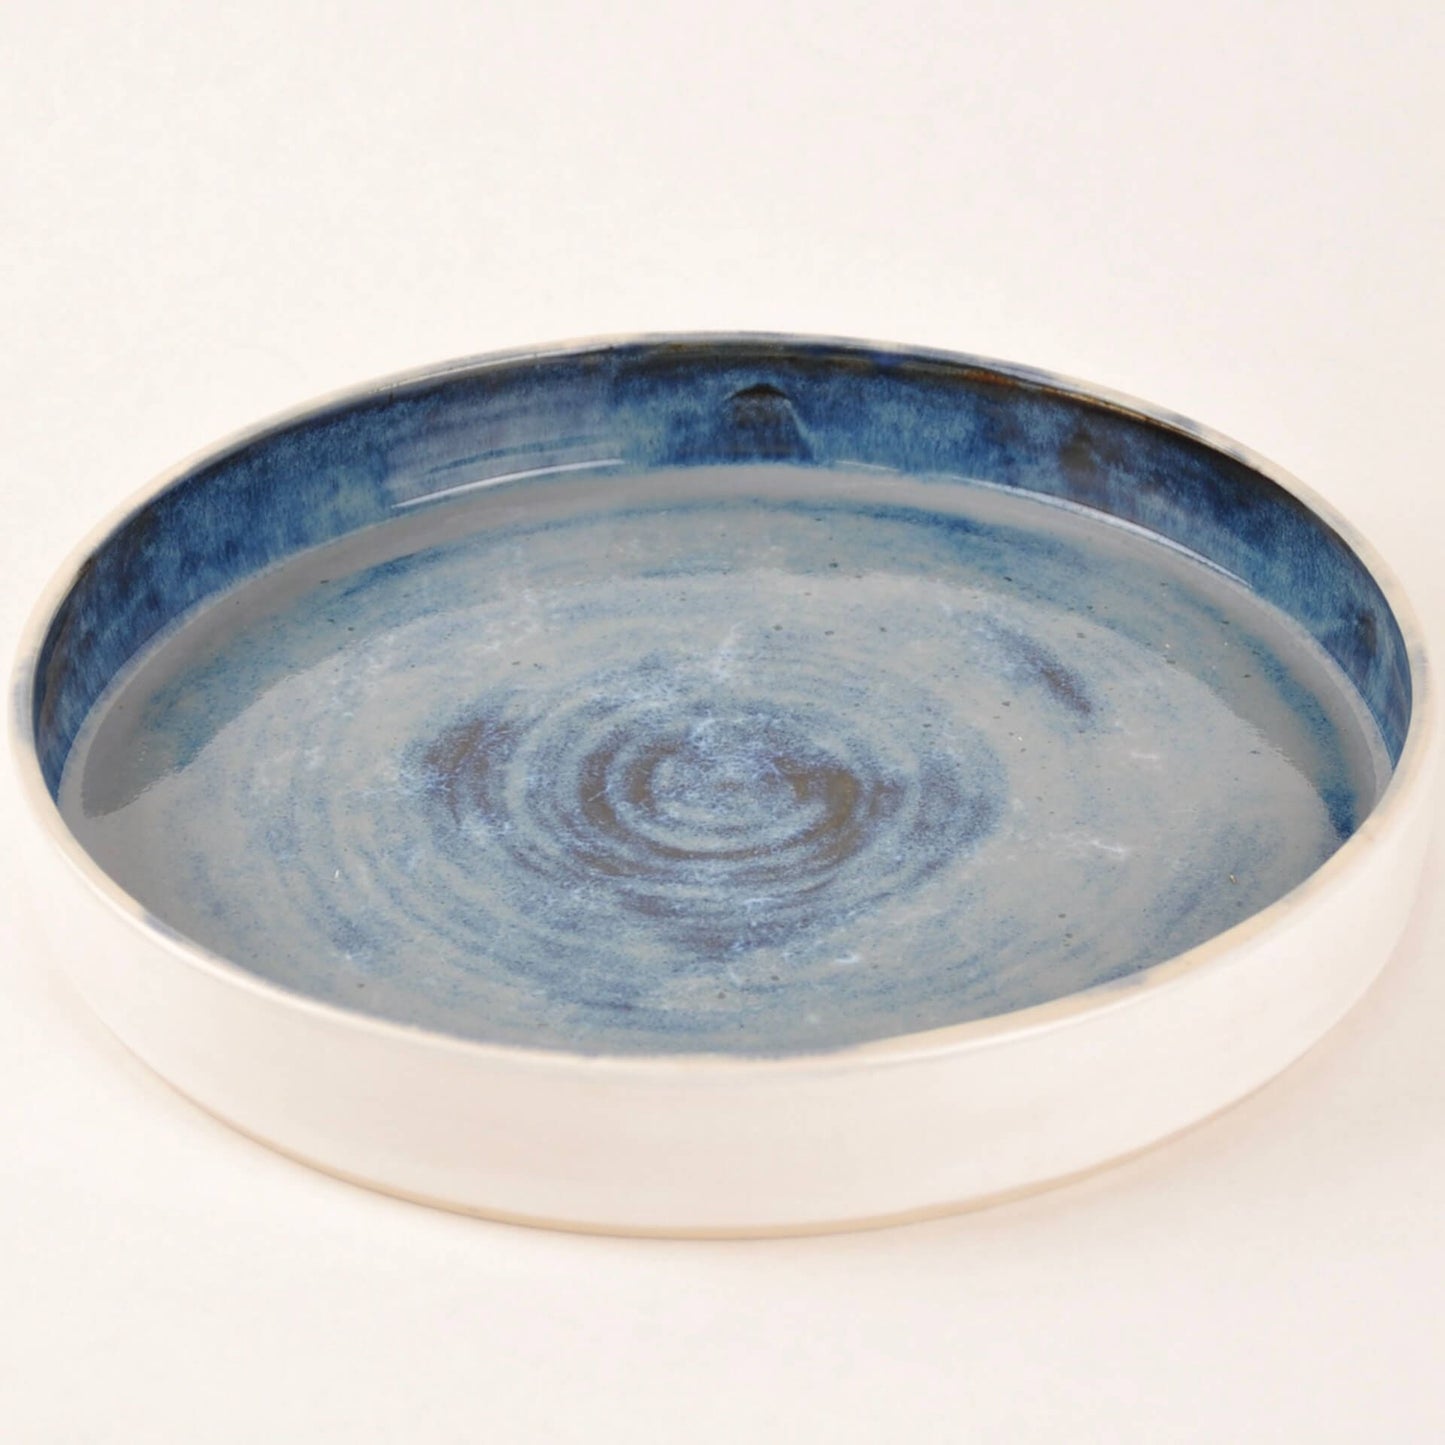 Hunkydory Ceramics Large Serving Dish in 'Mottled Blue' Glaze